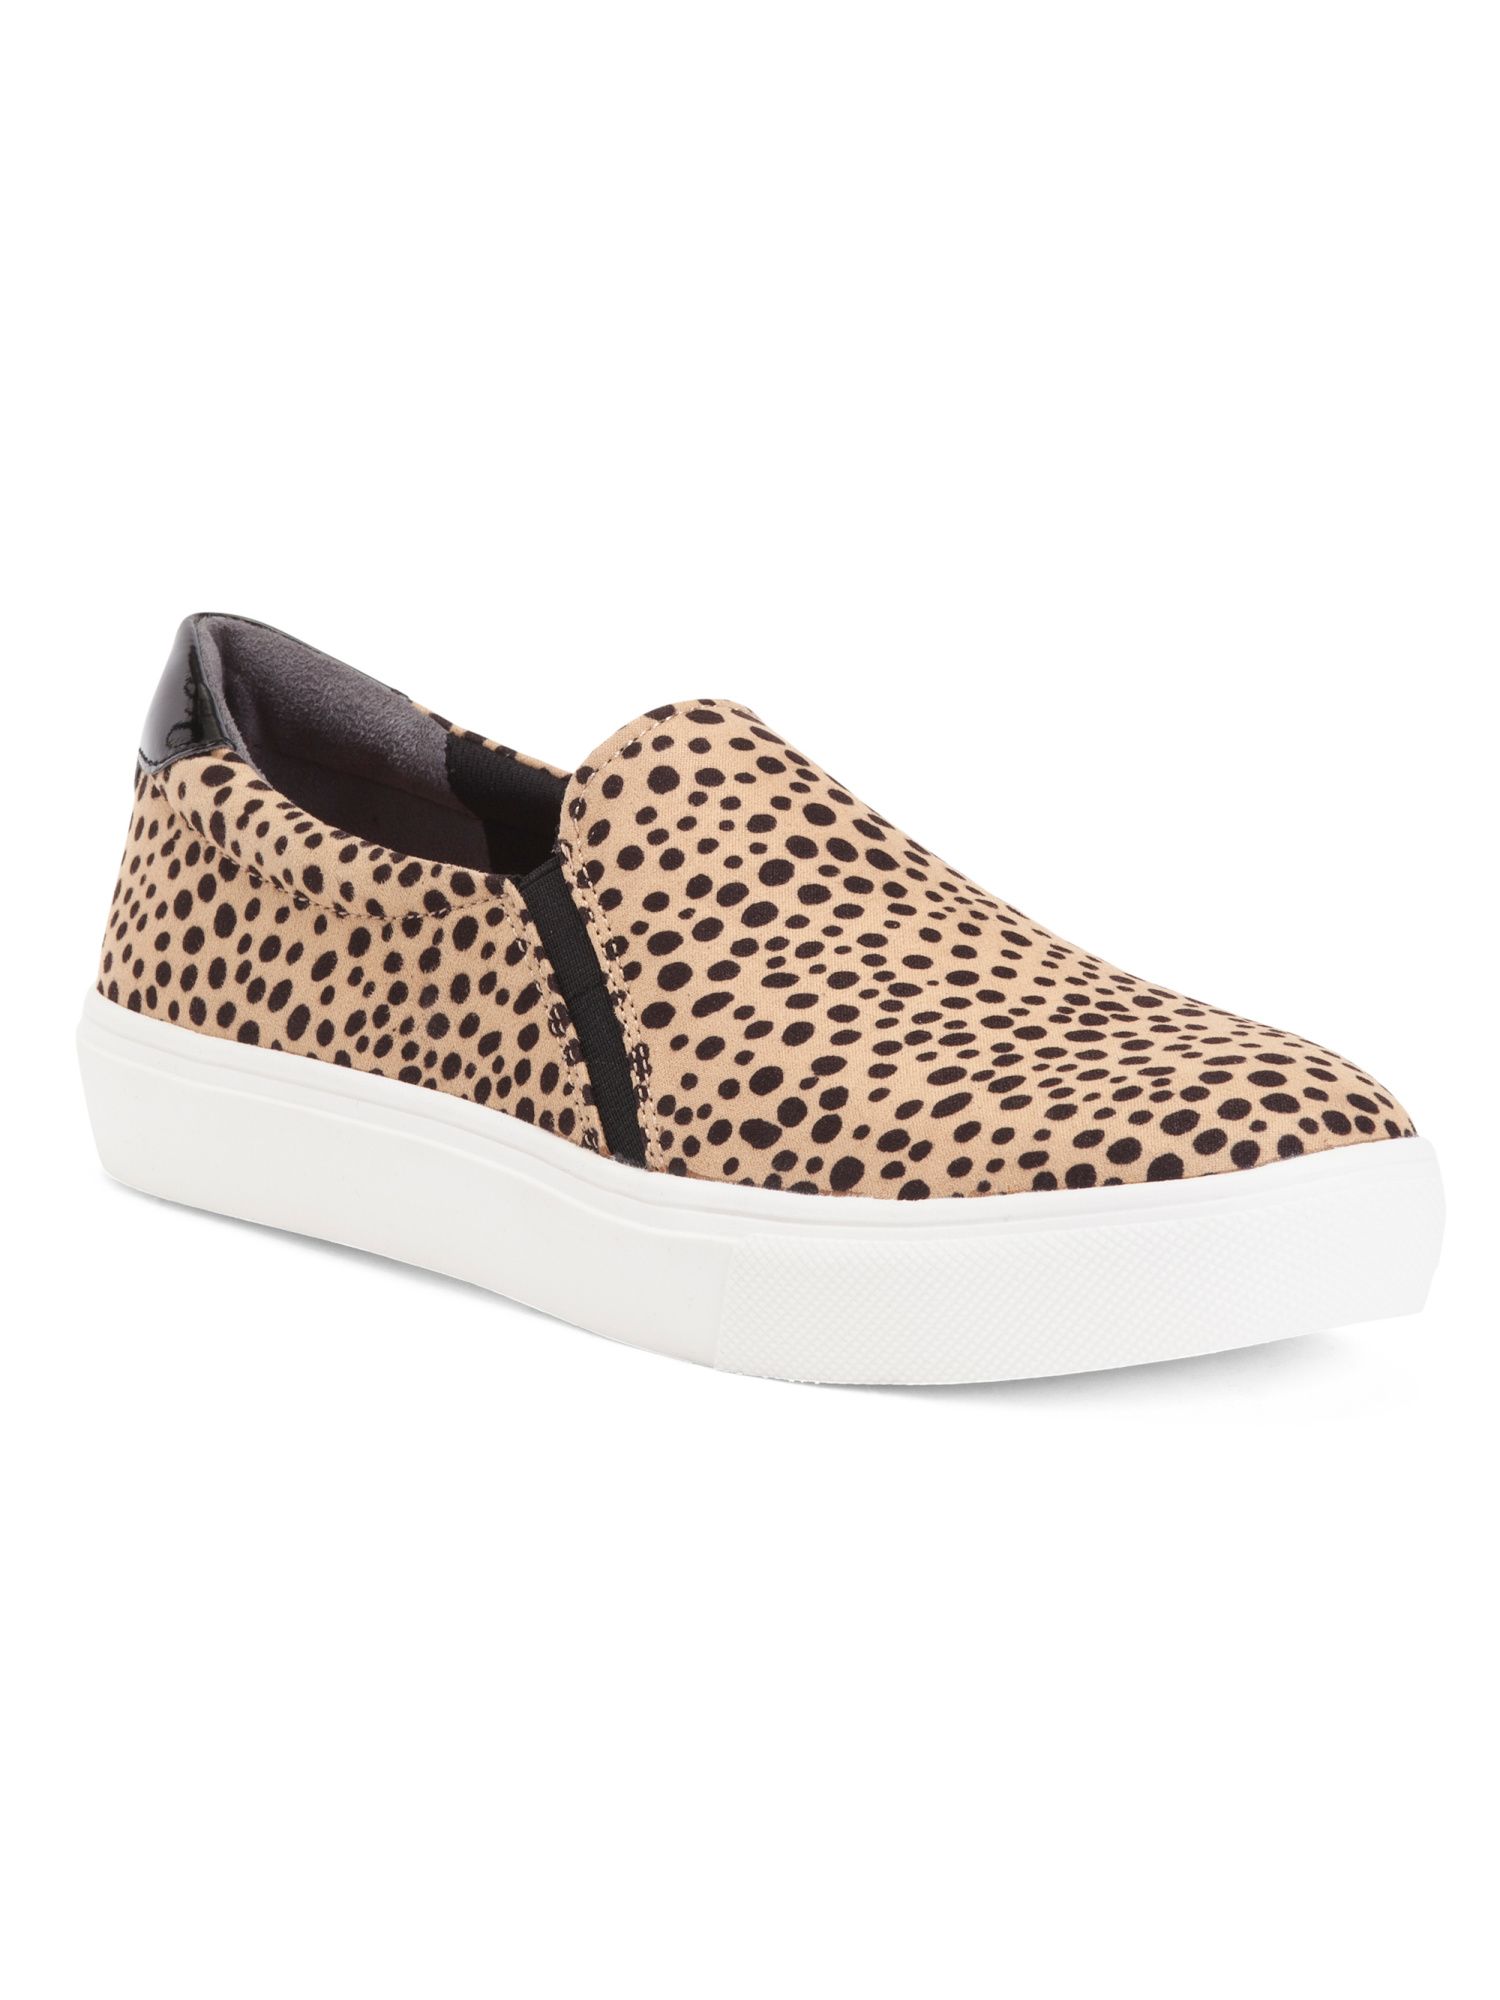 Slip On Leopard Print Comfort Sneakers | TJ Maxx